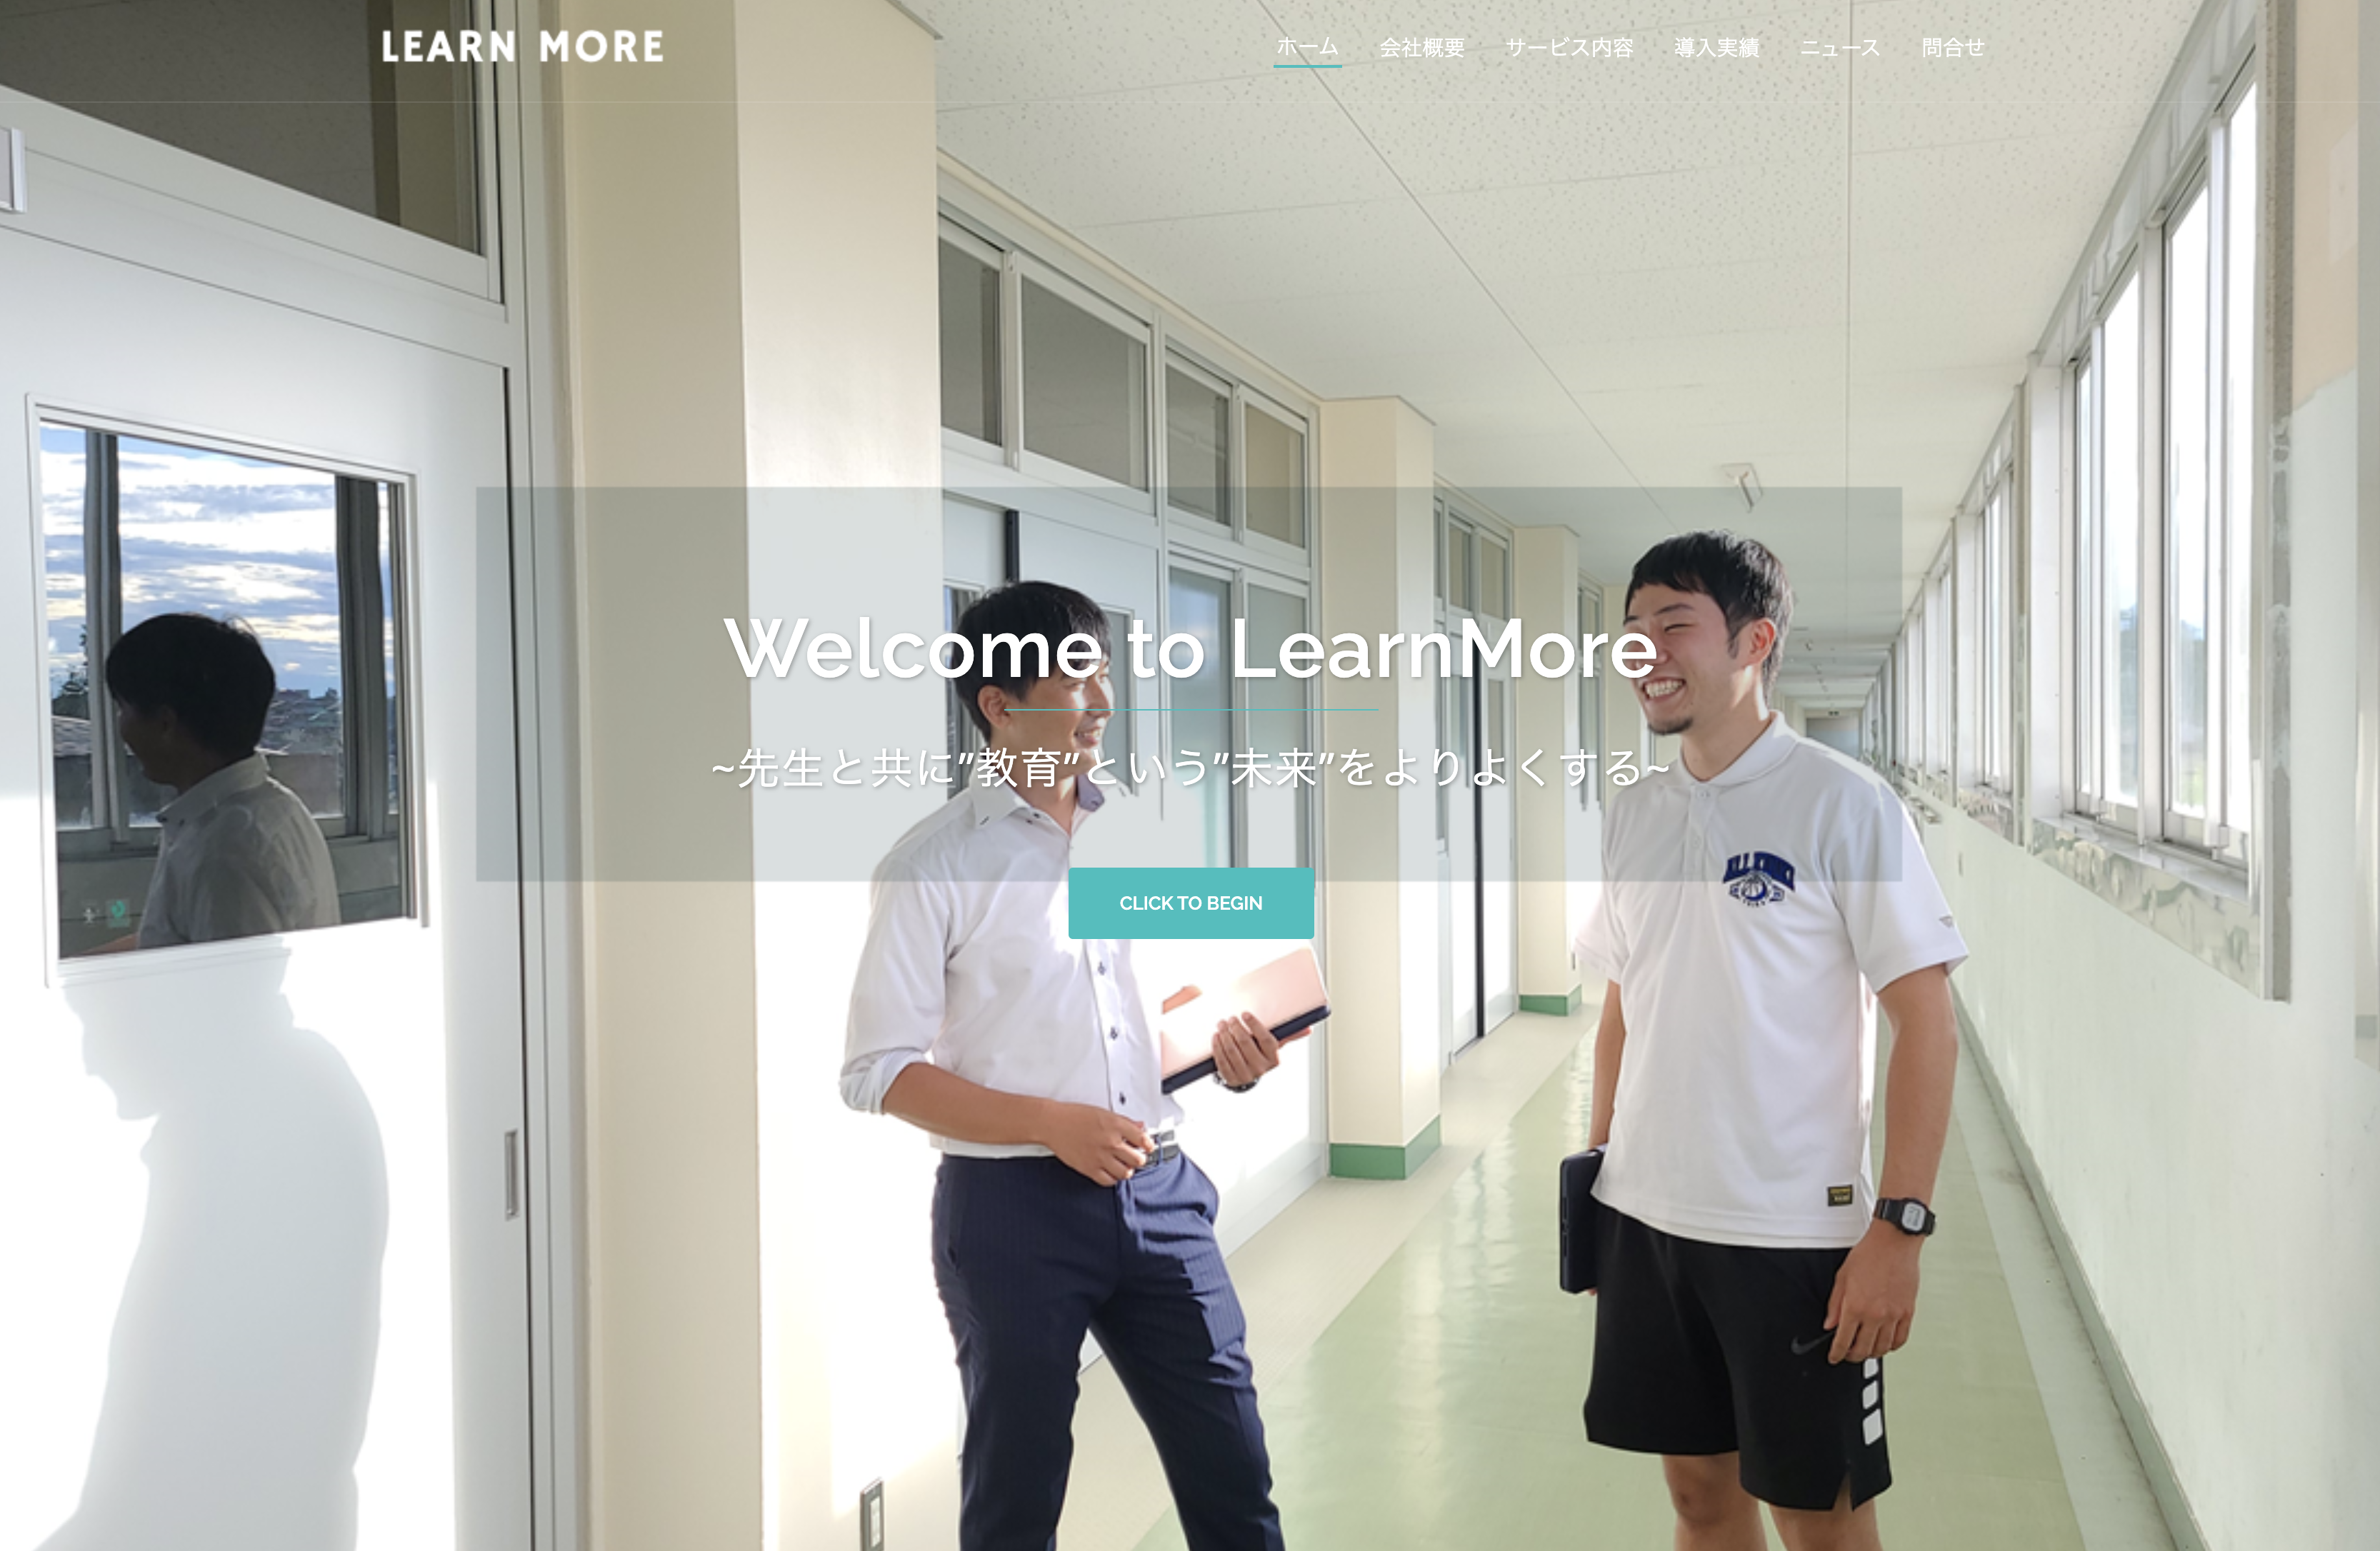 株式会社LearnMoreの株式会社LearnMore:デザイン制作サービス